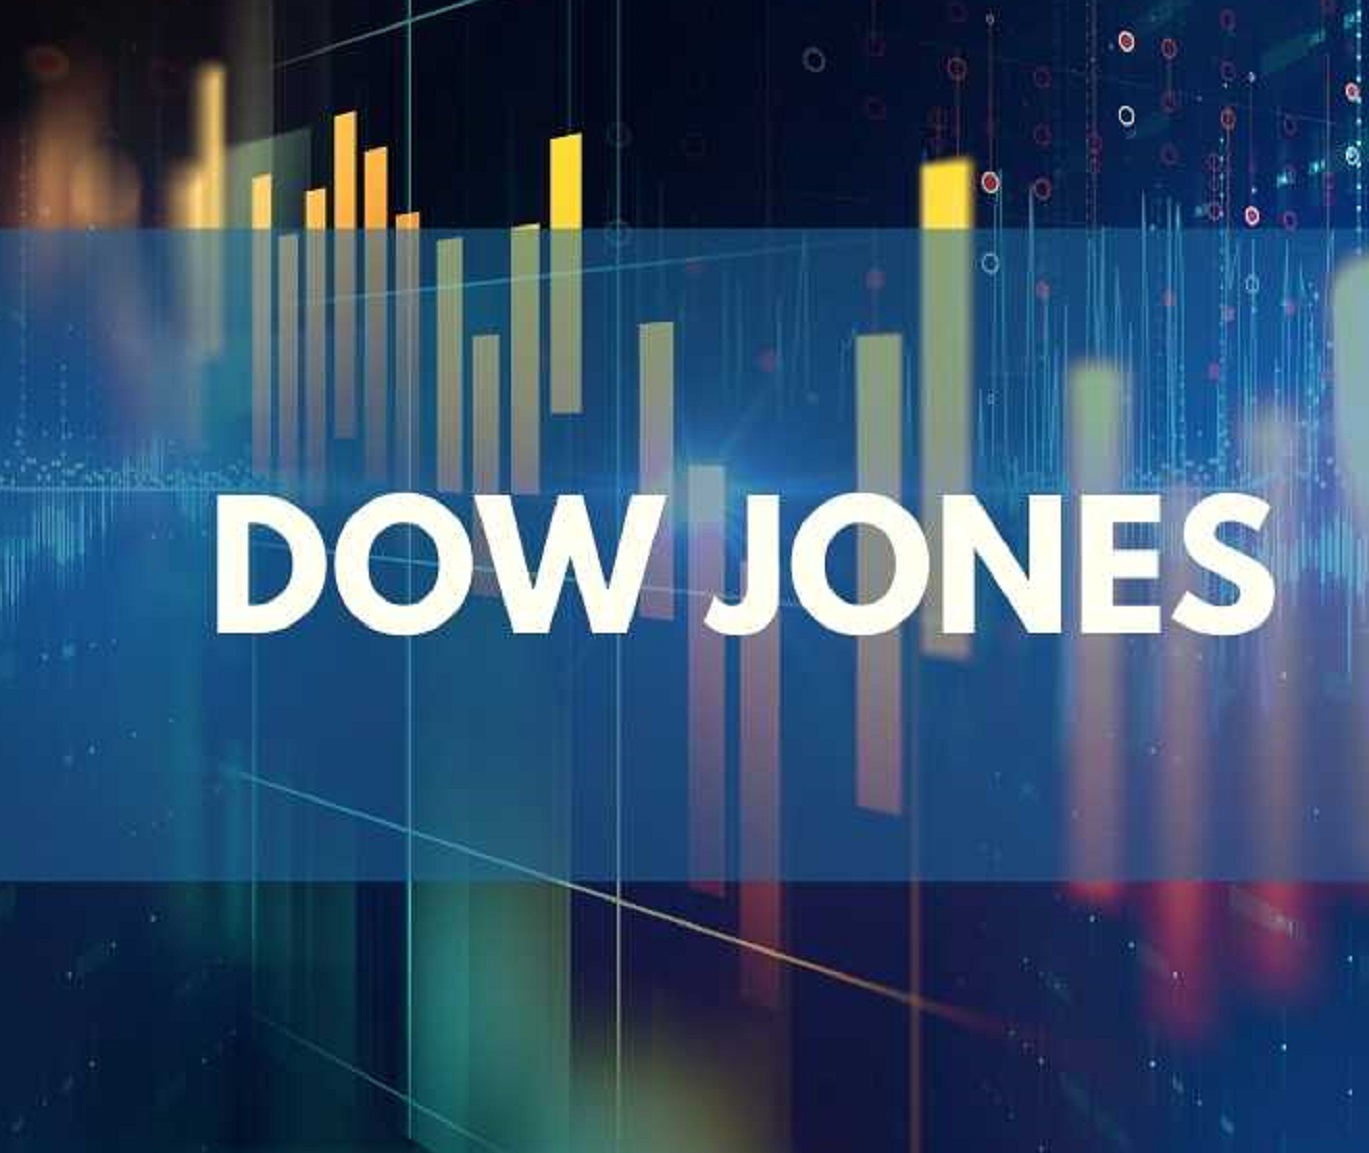 El Dow Jones alcanzó la marca histórica de cierre de 30 mil puntos